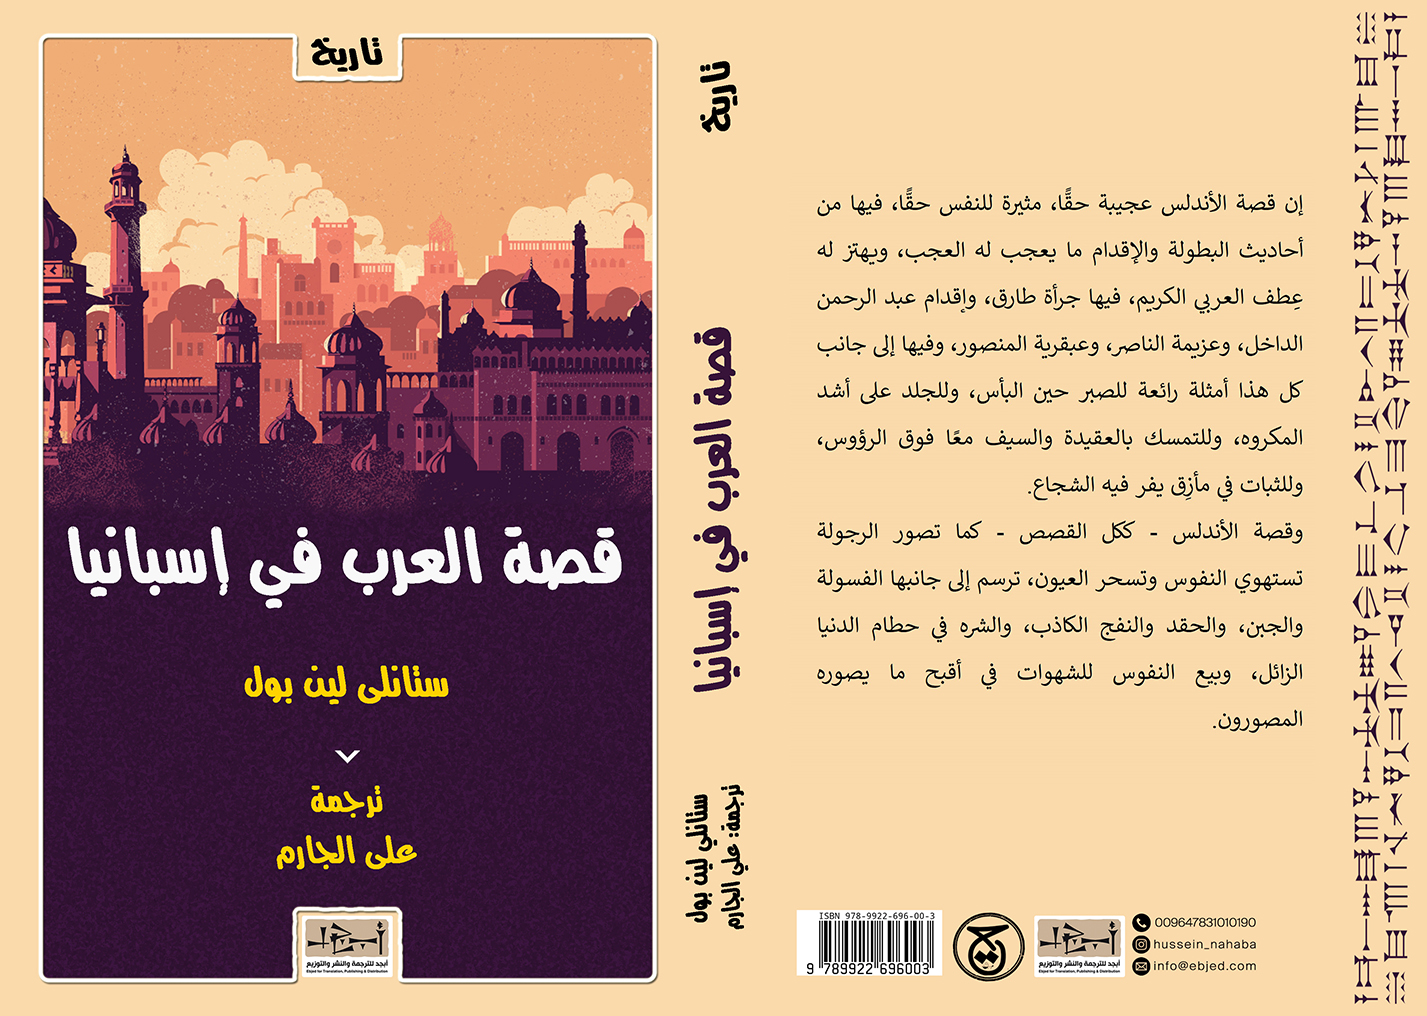 الكتاب: قصة العرب في الاندلس المؤلف: ستانلي لين بول ترجمة: علي الجارم التصنيف: تاريخ